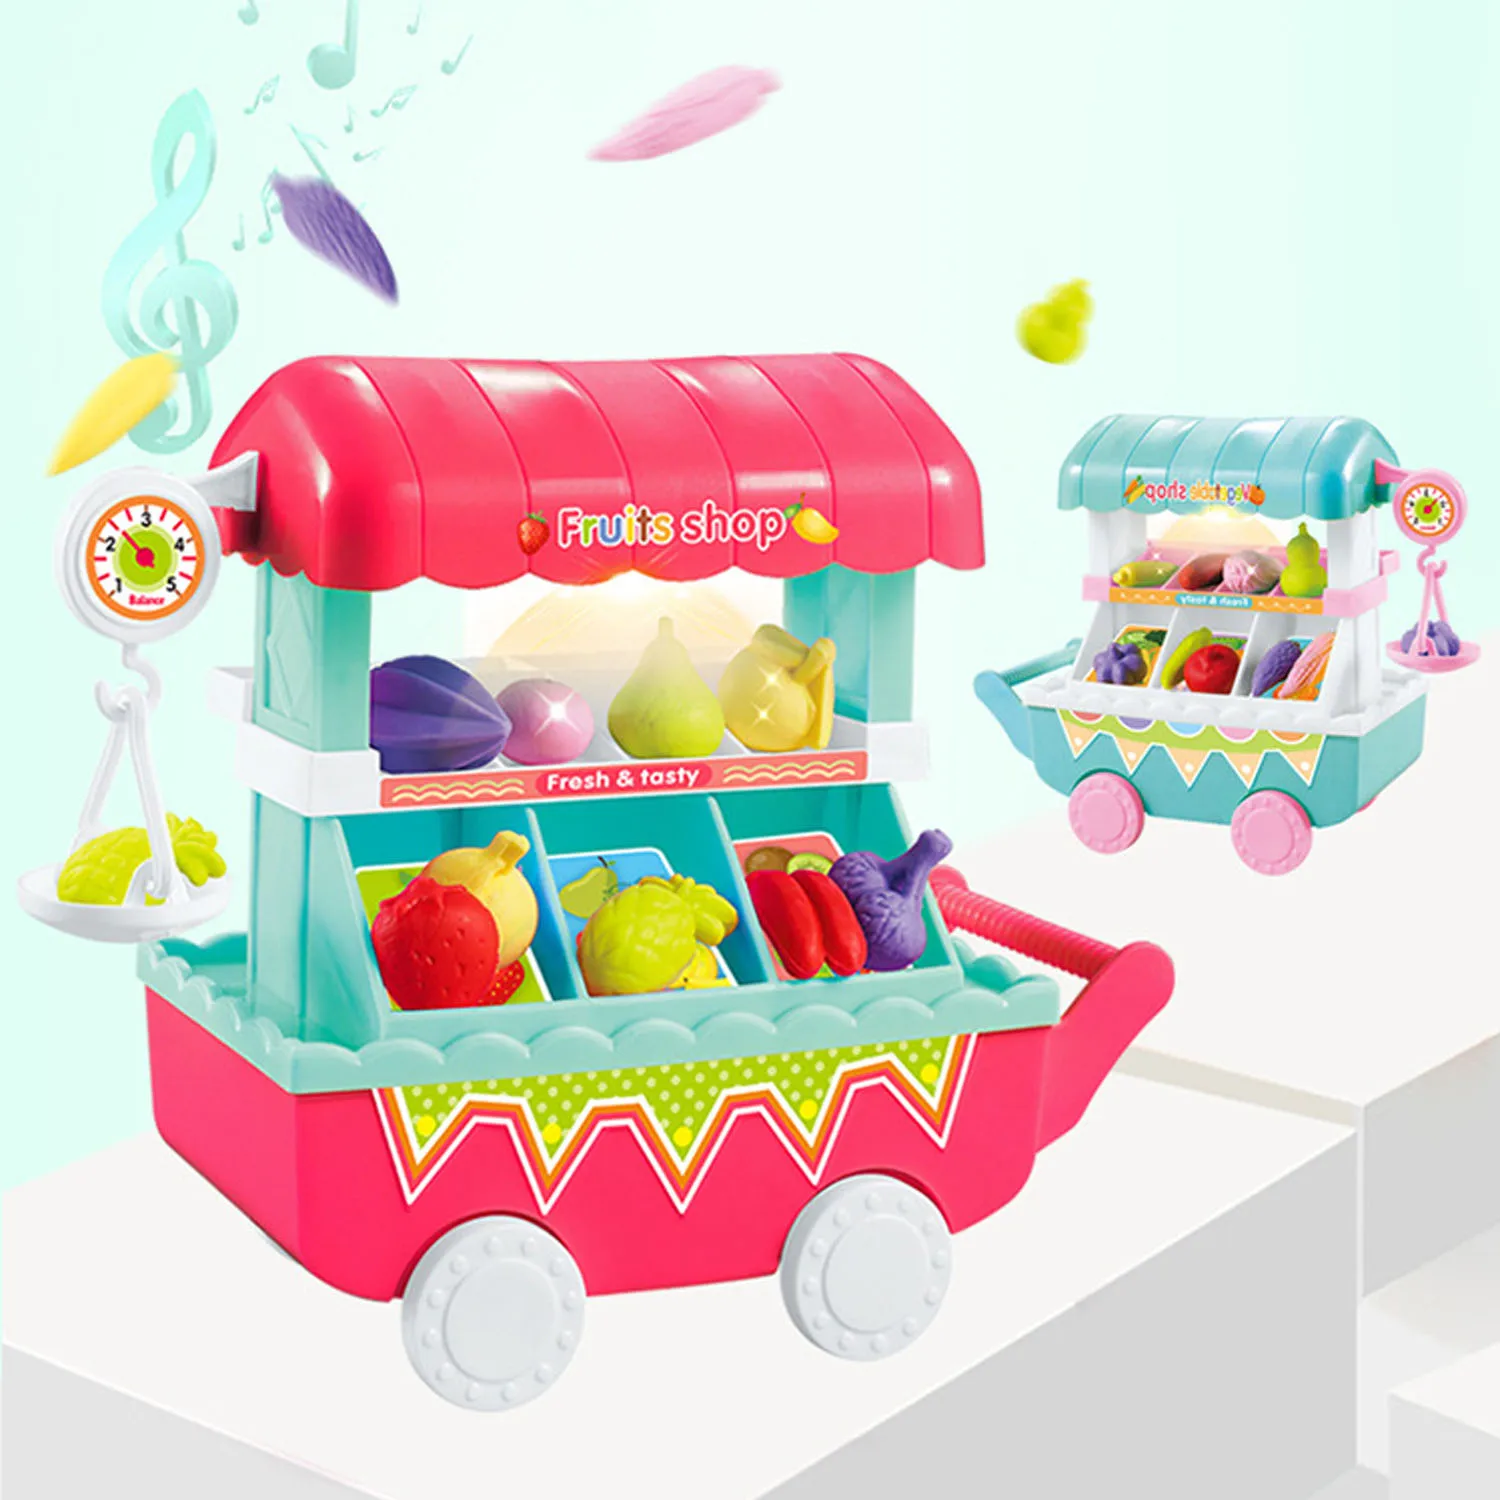 Shopping игрушка-тележка моделирование мини еда овощи фрукты магазин тележка с светодиодный свет музыки претендует продукты игрушки